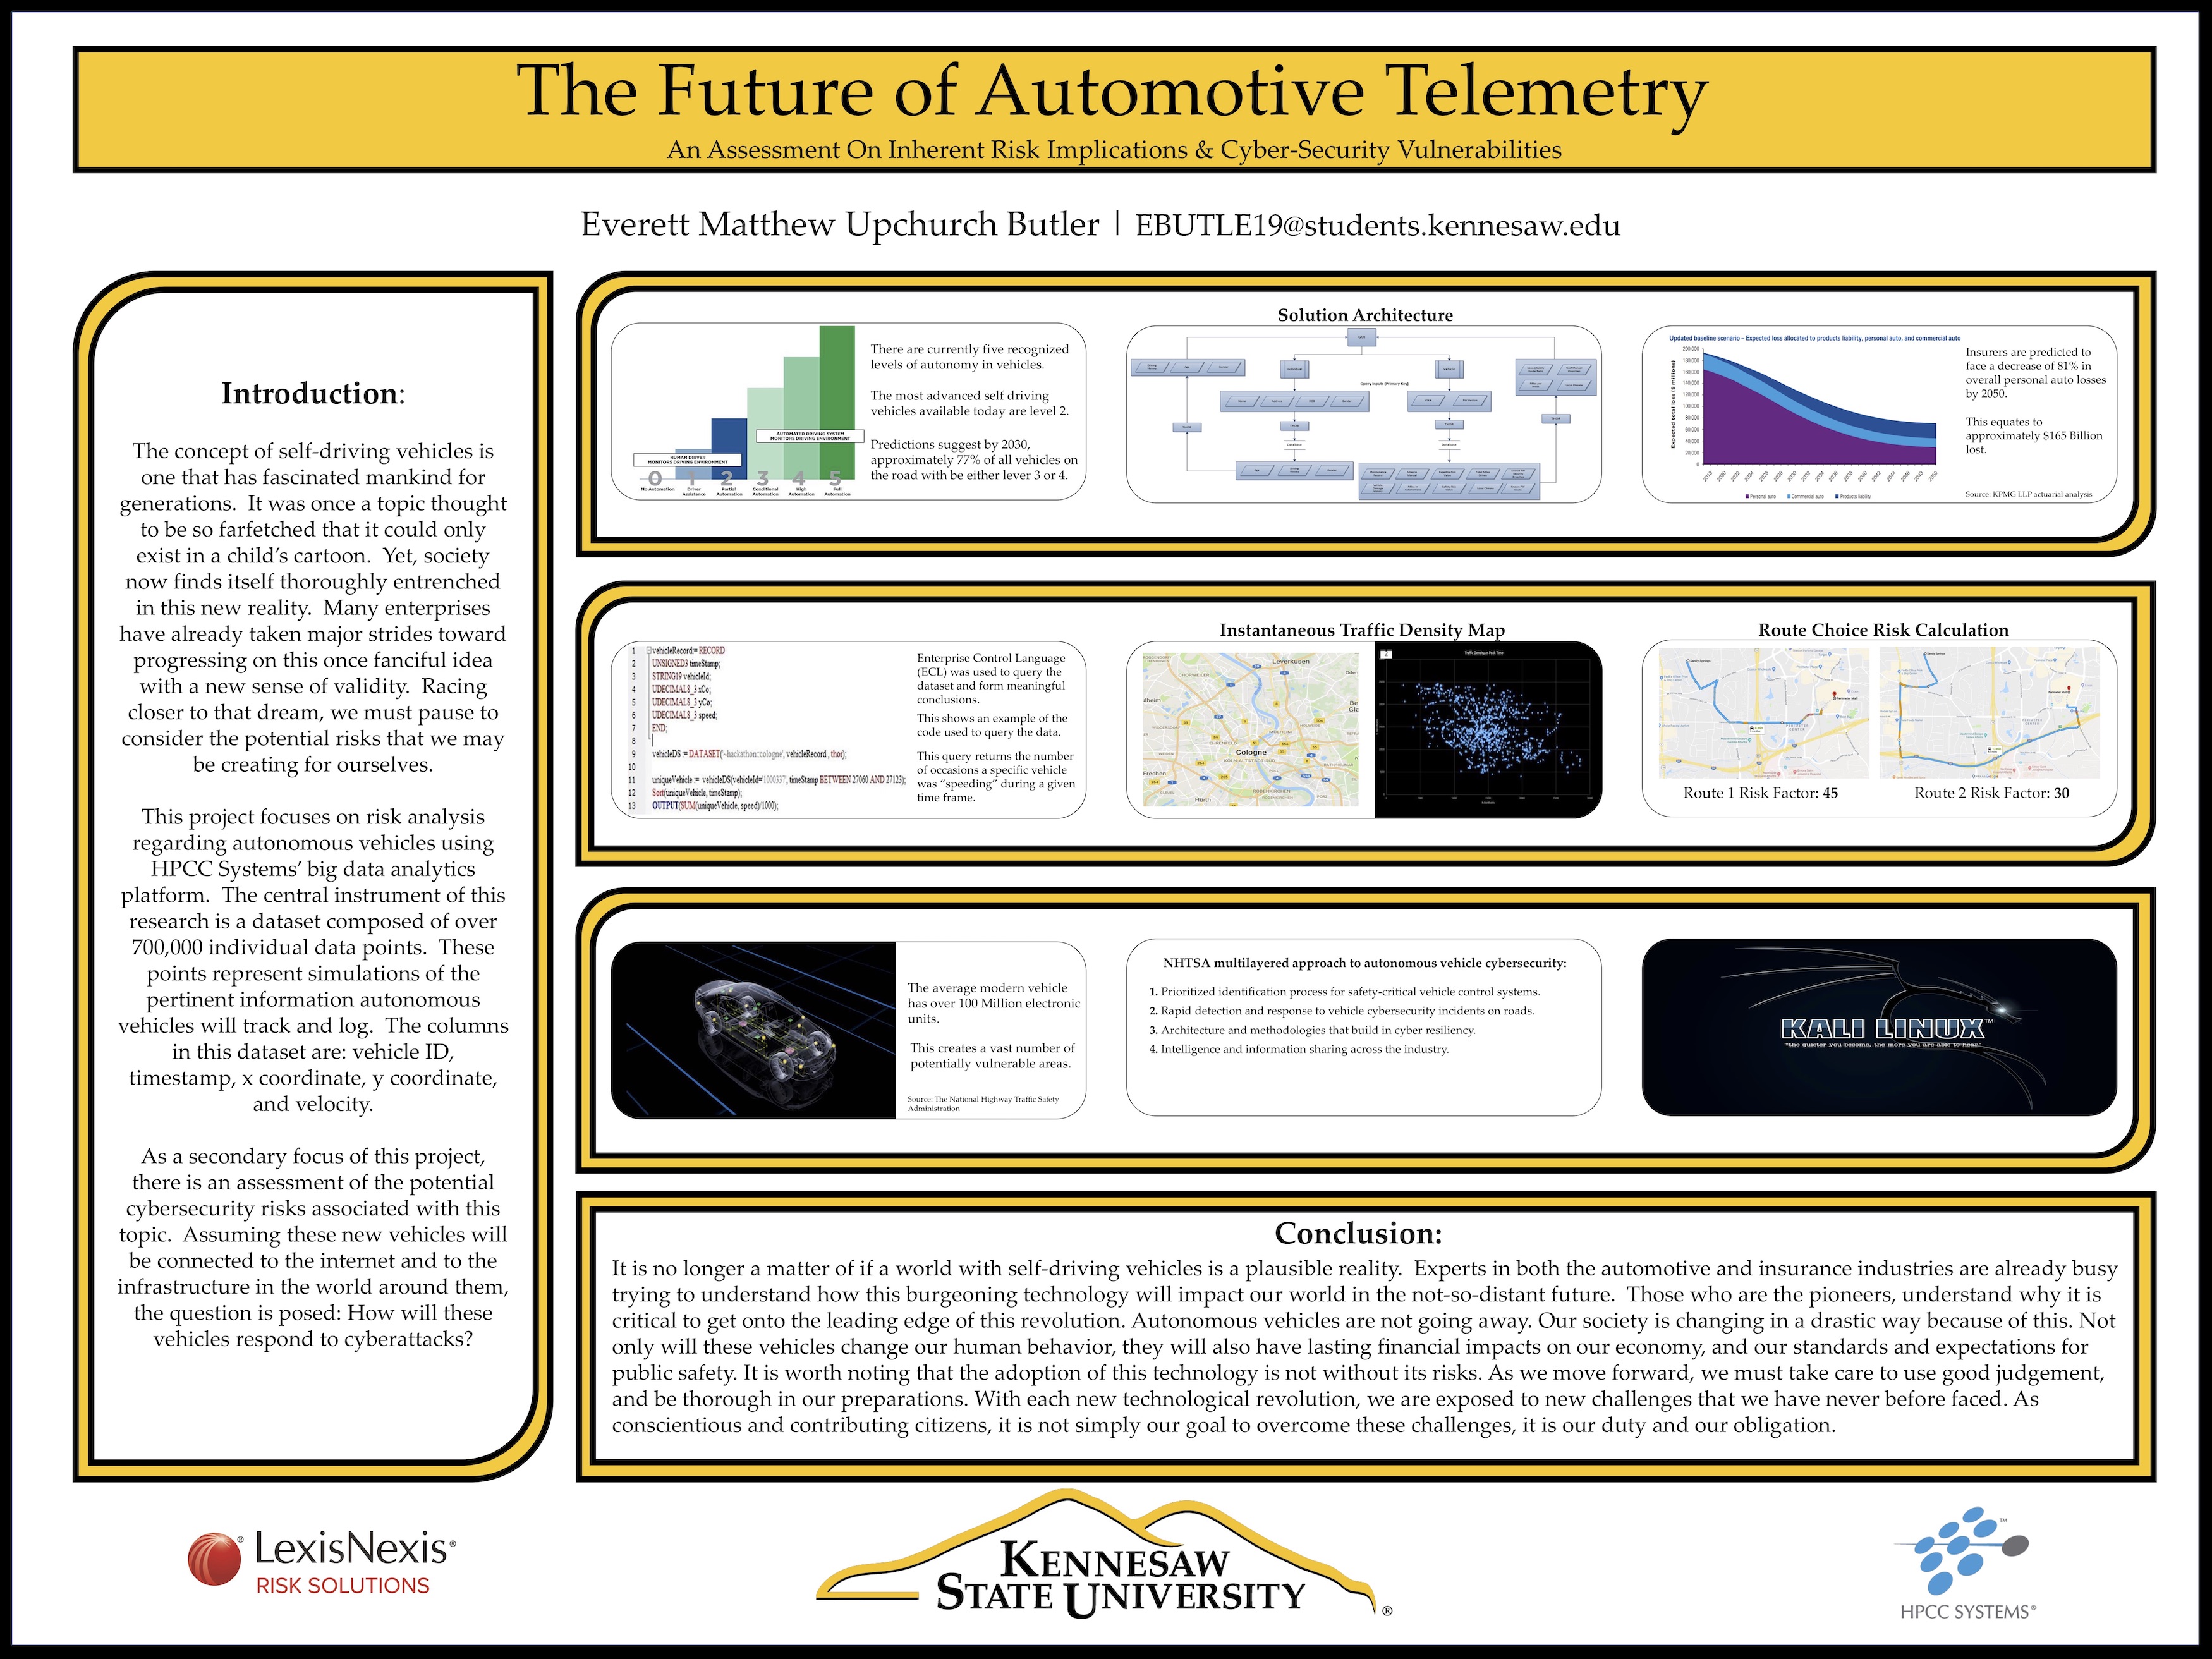 Everett Matthew Upchurch Butler - The future of automotive technology